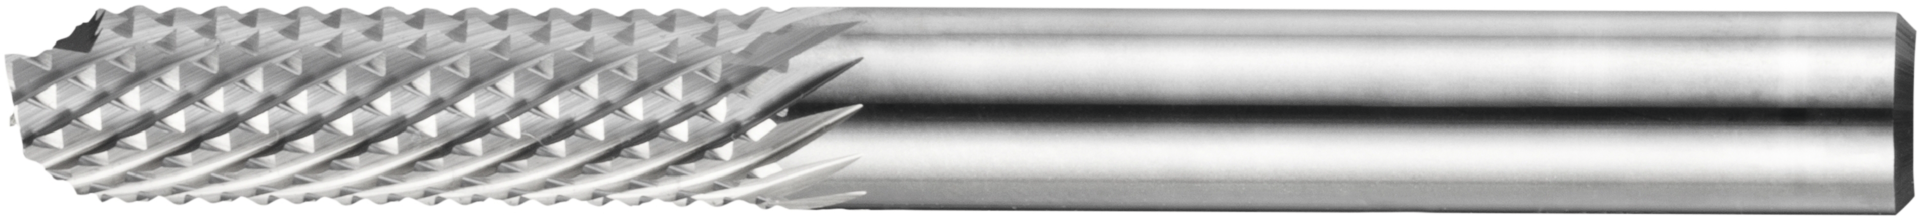 Frässtift Hartmetall Feinverzahnung Fish-Tail Schaft 6mm Zylinderform HFAS D6mm L25mm